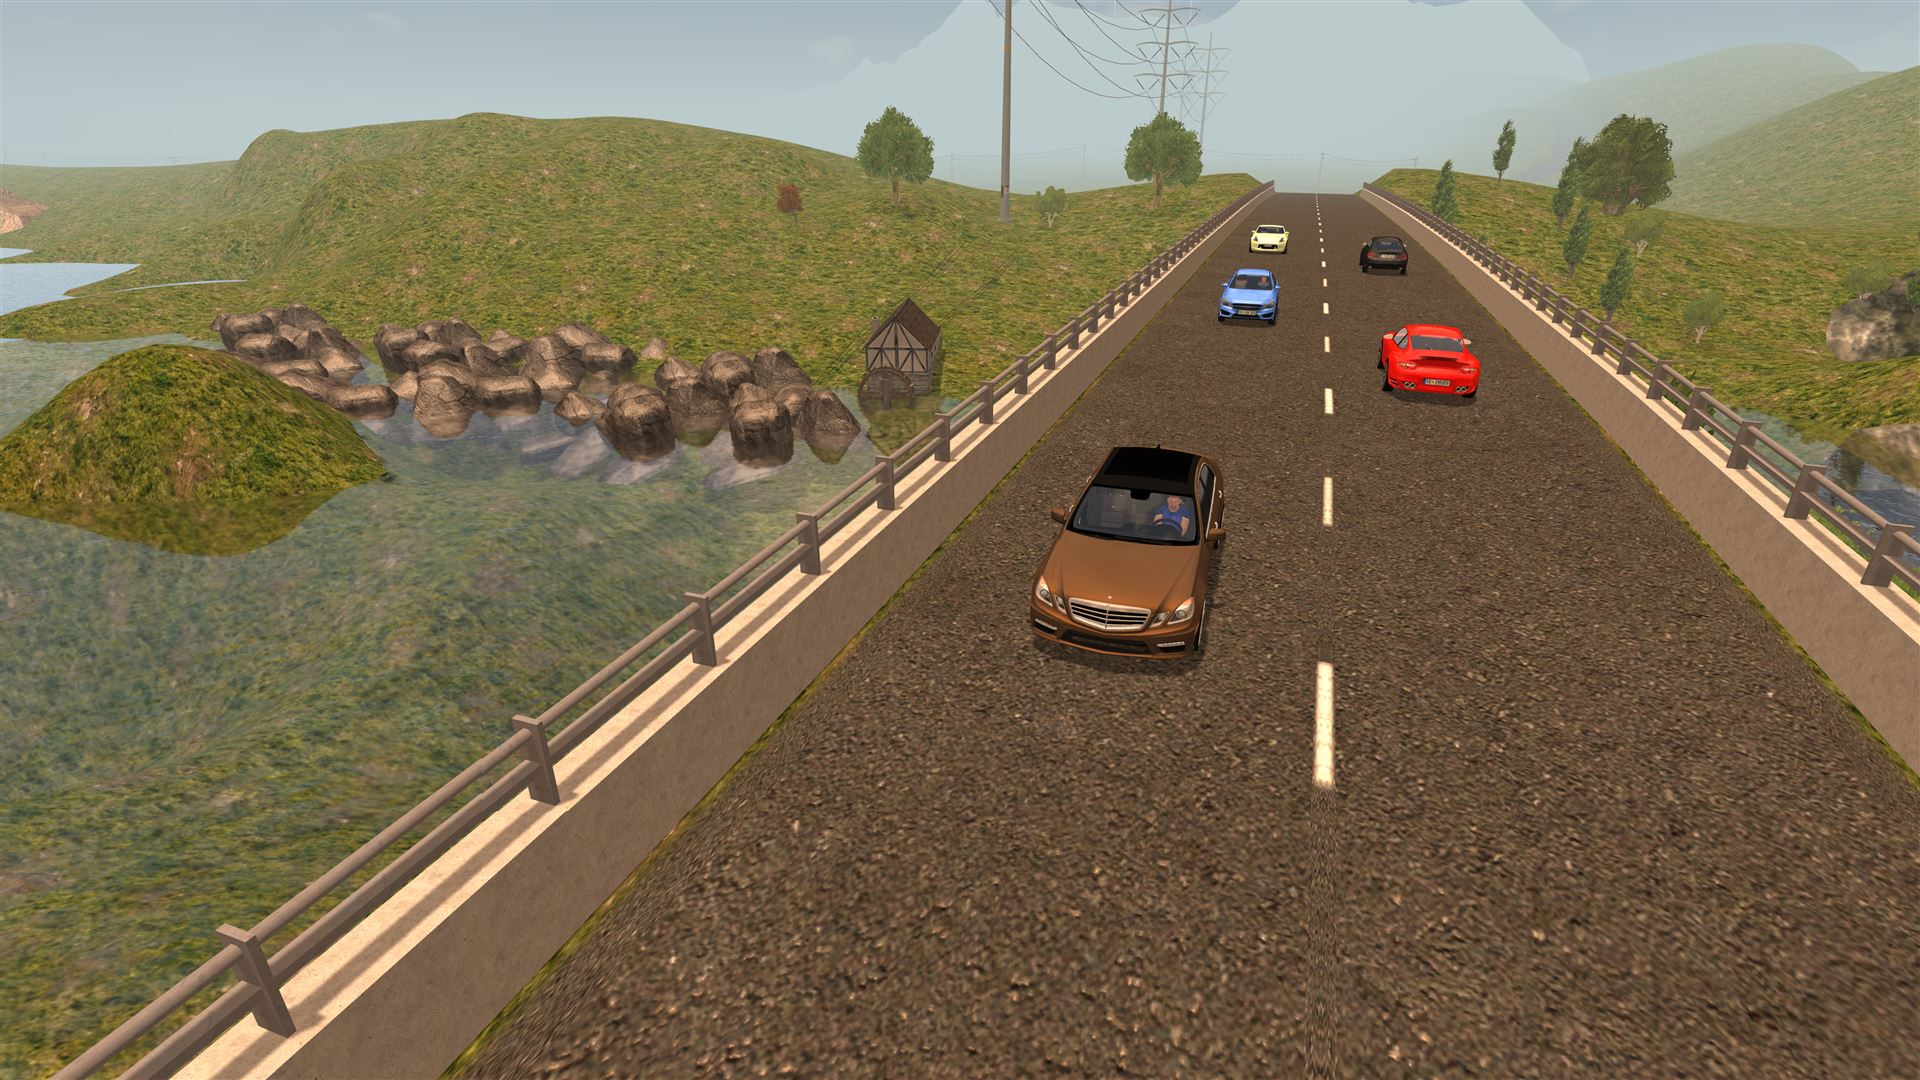 Car driving school simulator game download